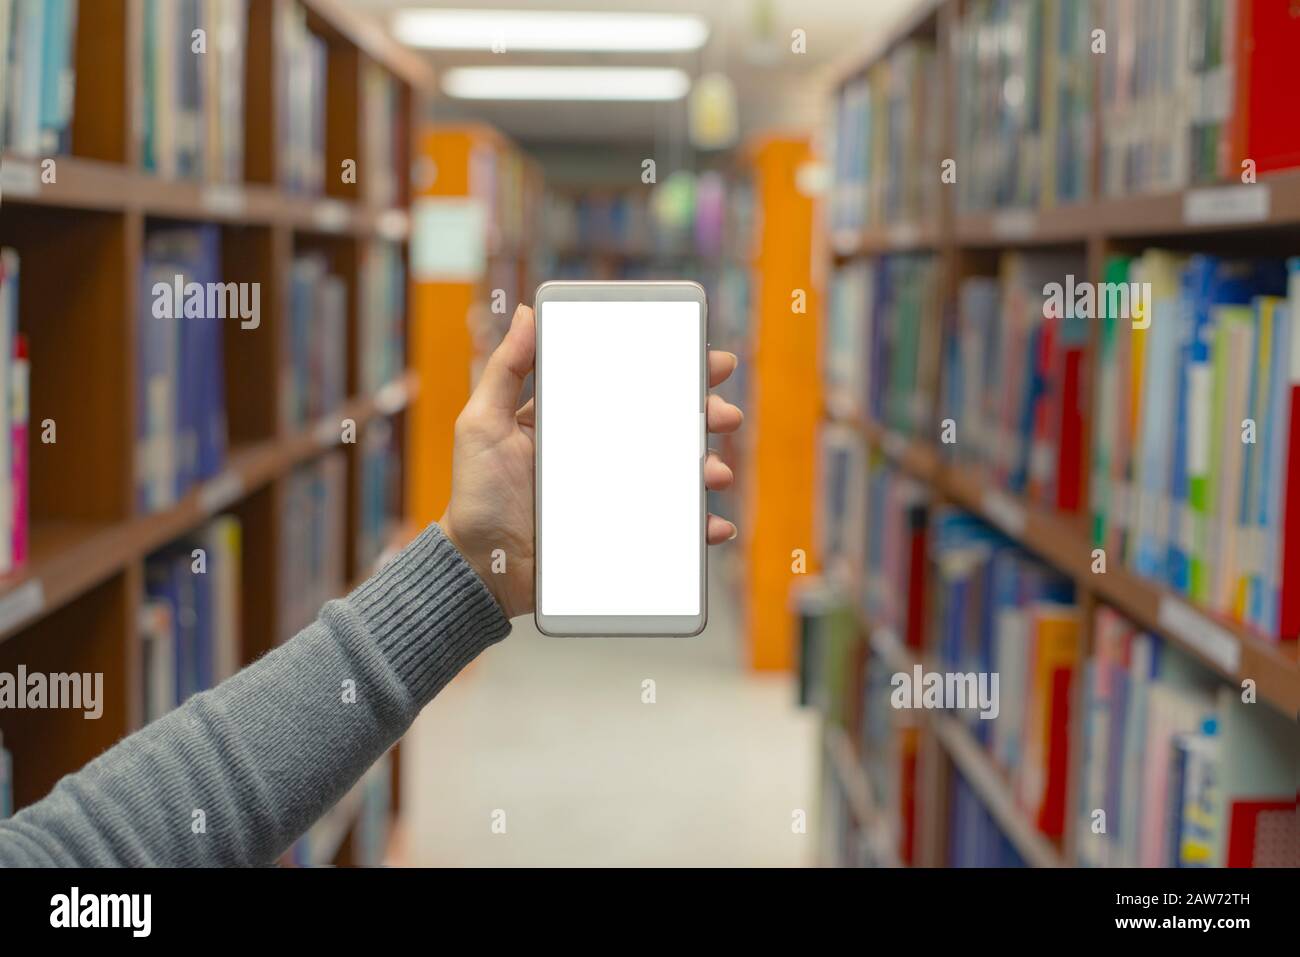 Nahaufnahme Der Hände, die das Handy mit dem Hintergrund von Büchern auf dem Regal halten und in der Bibliothek stapeln, Bildungskonzept. Stockfoto